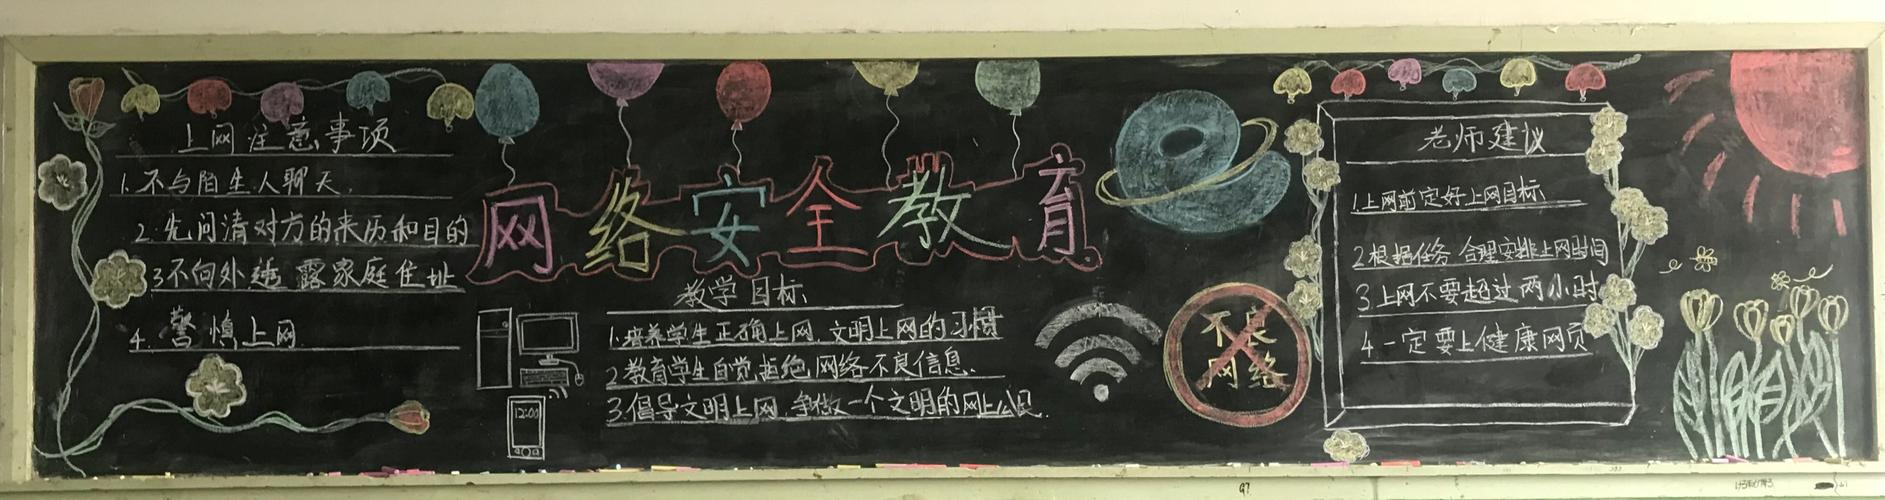 民族实验中学开展网络安全创意黑板报活动